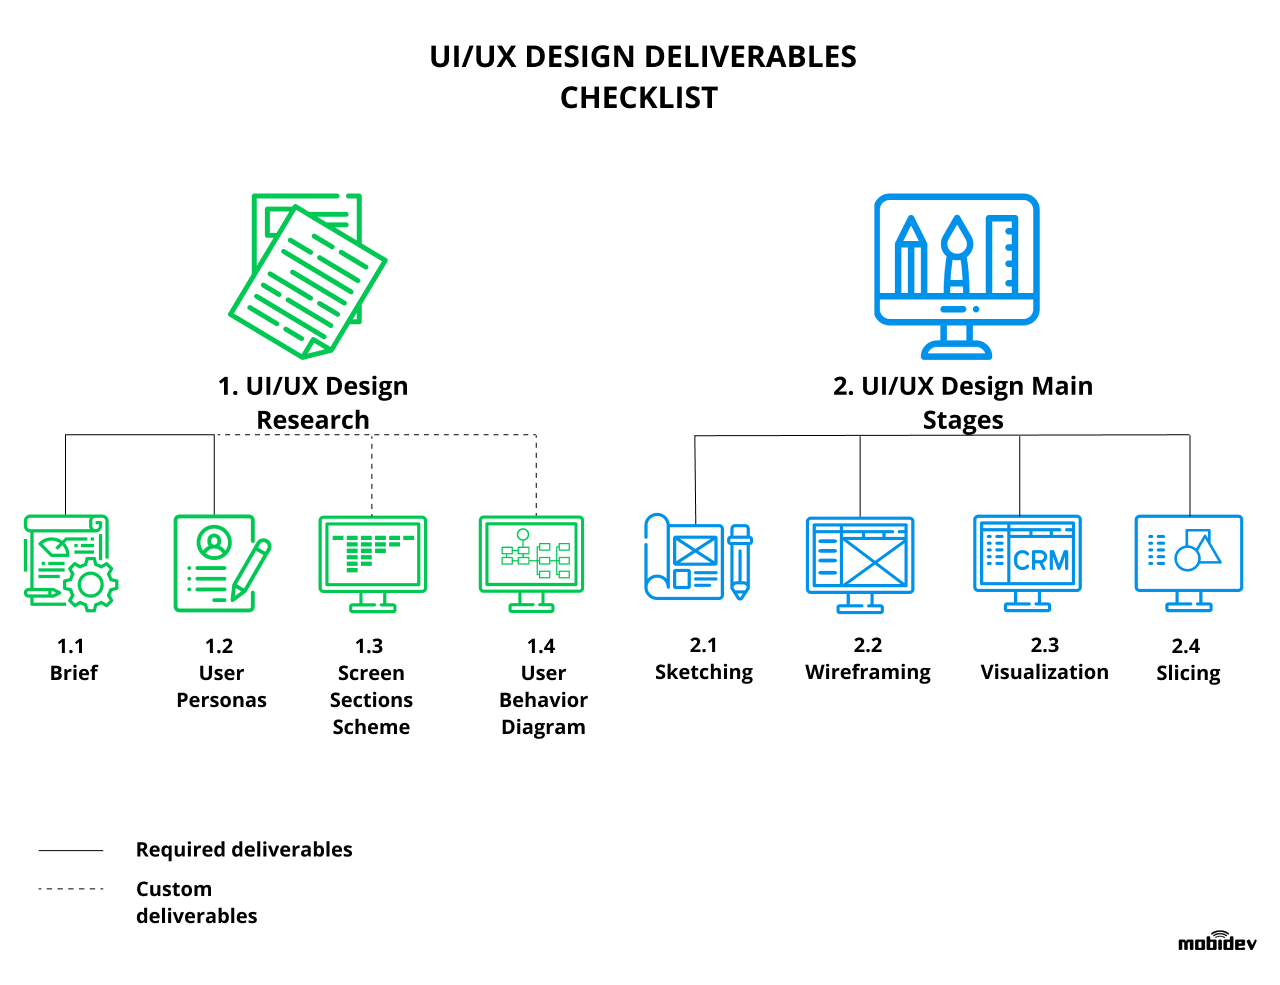 Top 8 UI/UX design deliverables checklist